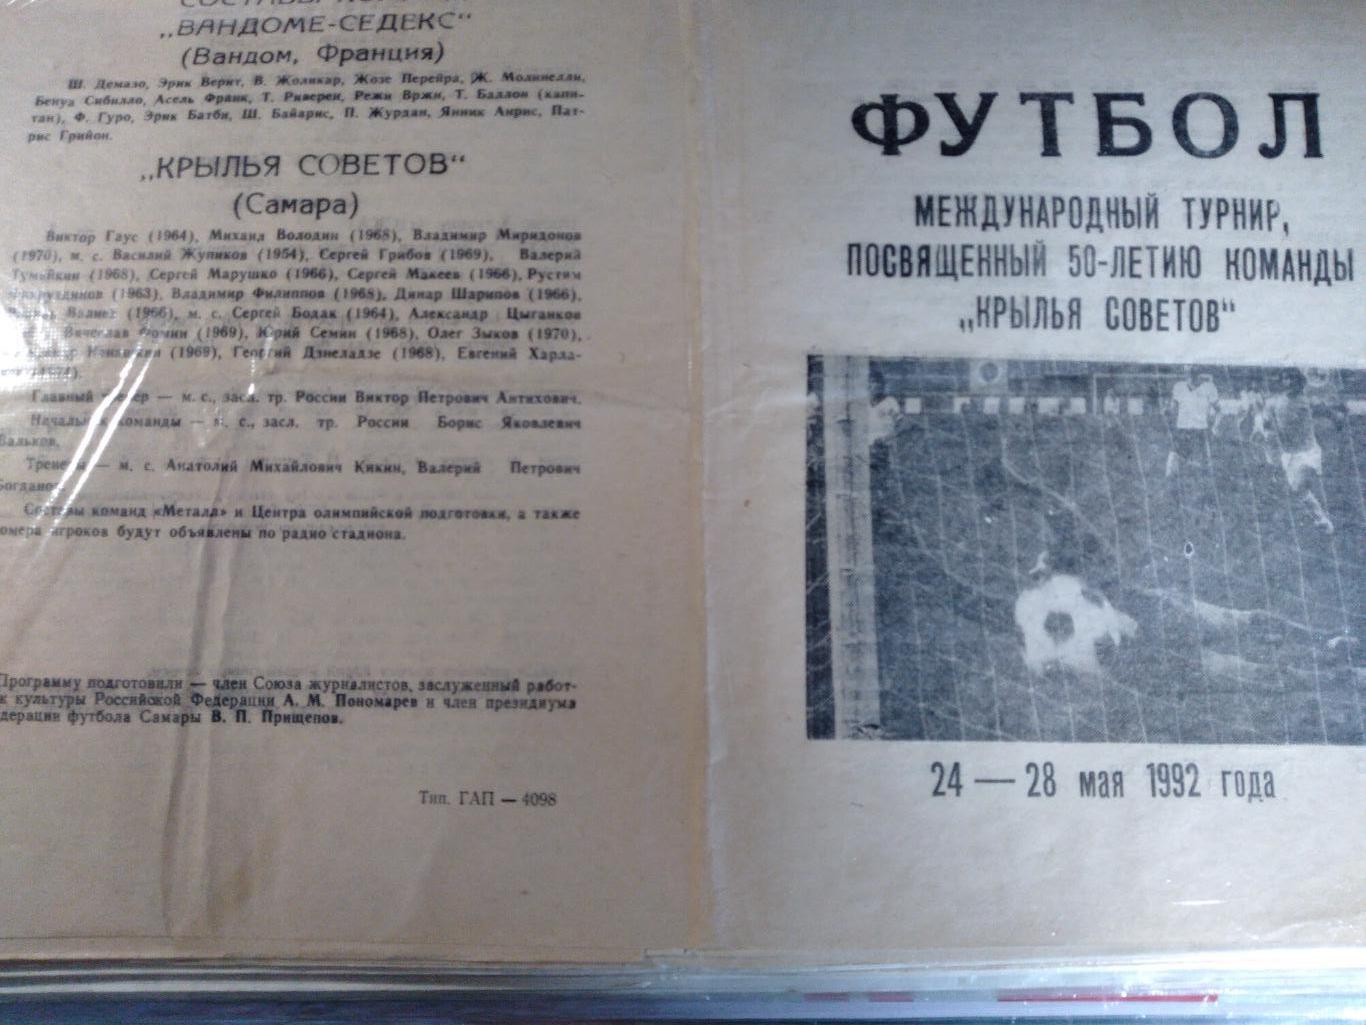 Программа международного турнира в честь 50-летия команды Крылья Советов